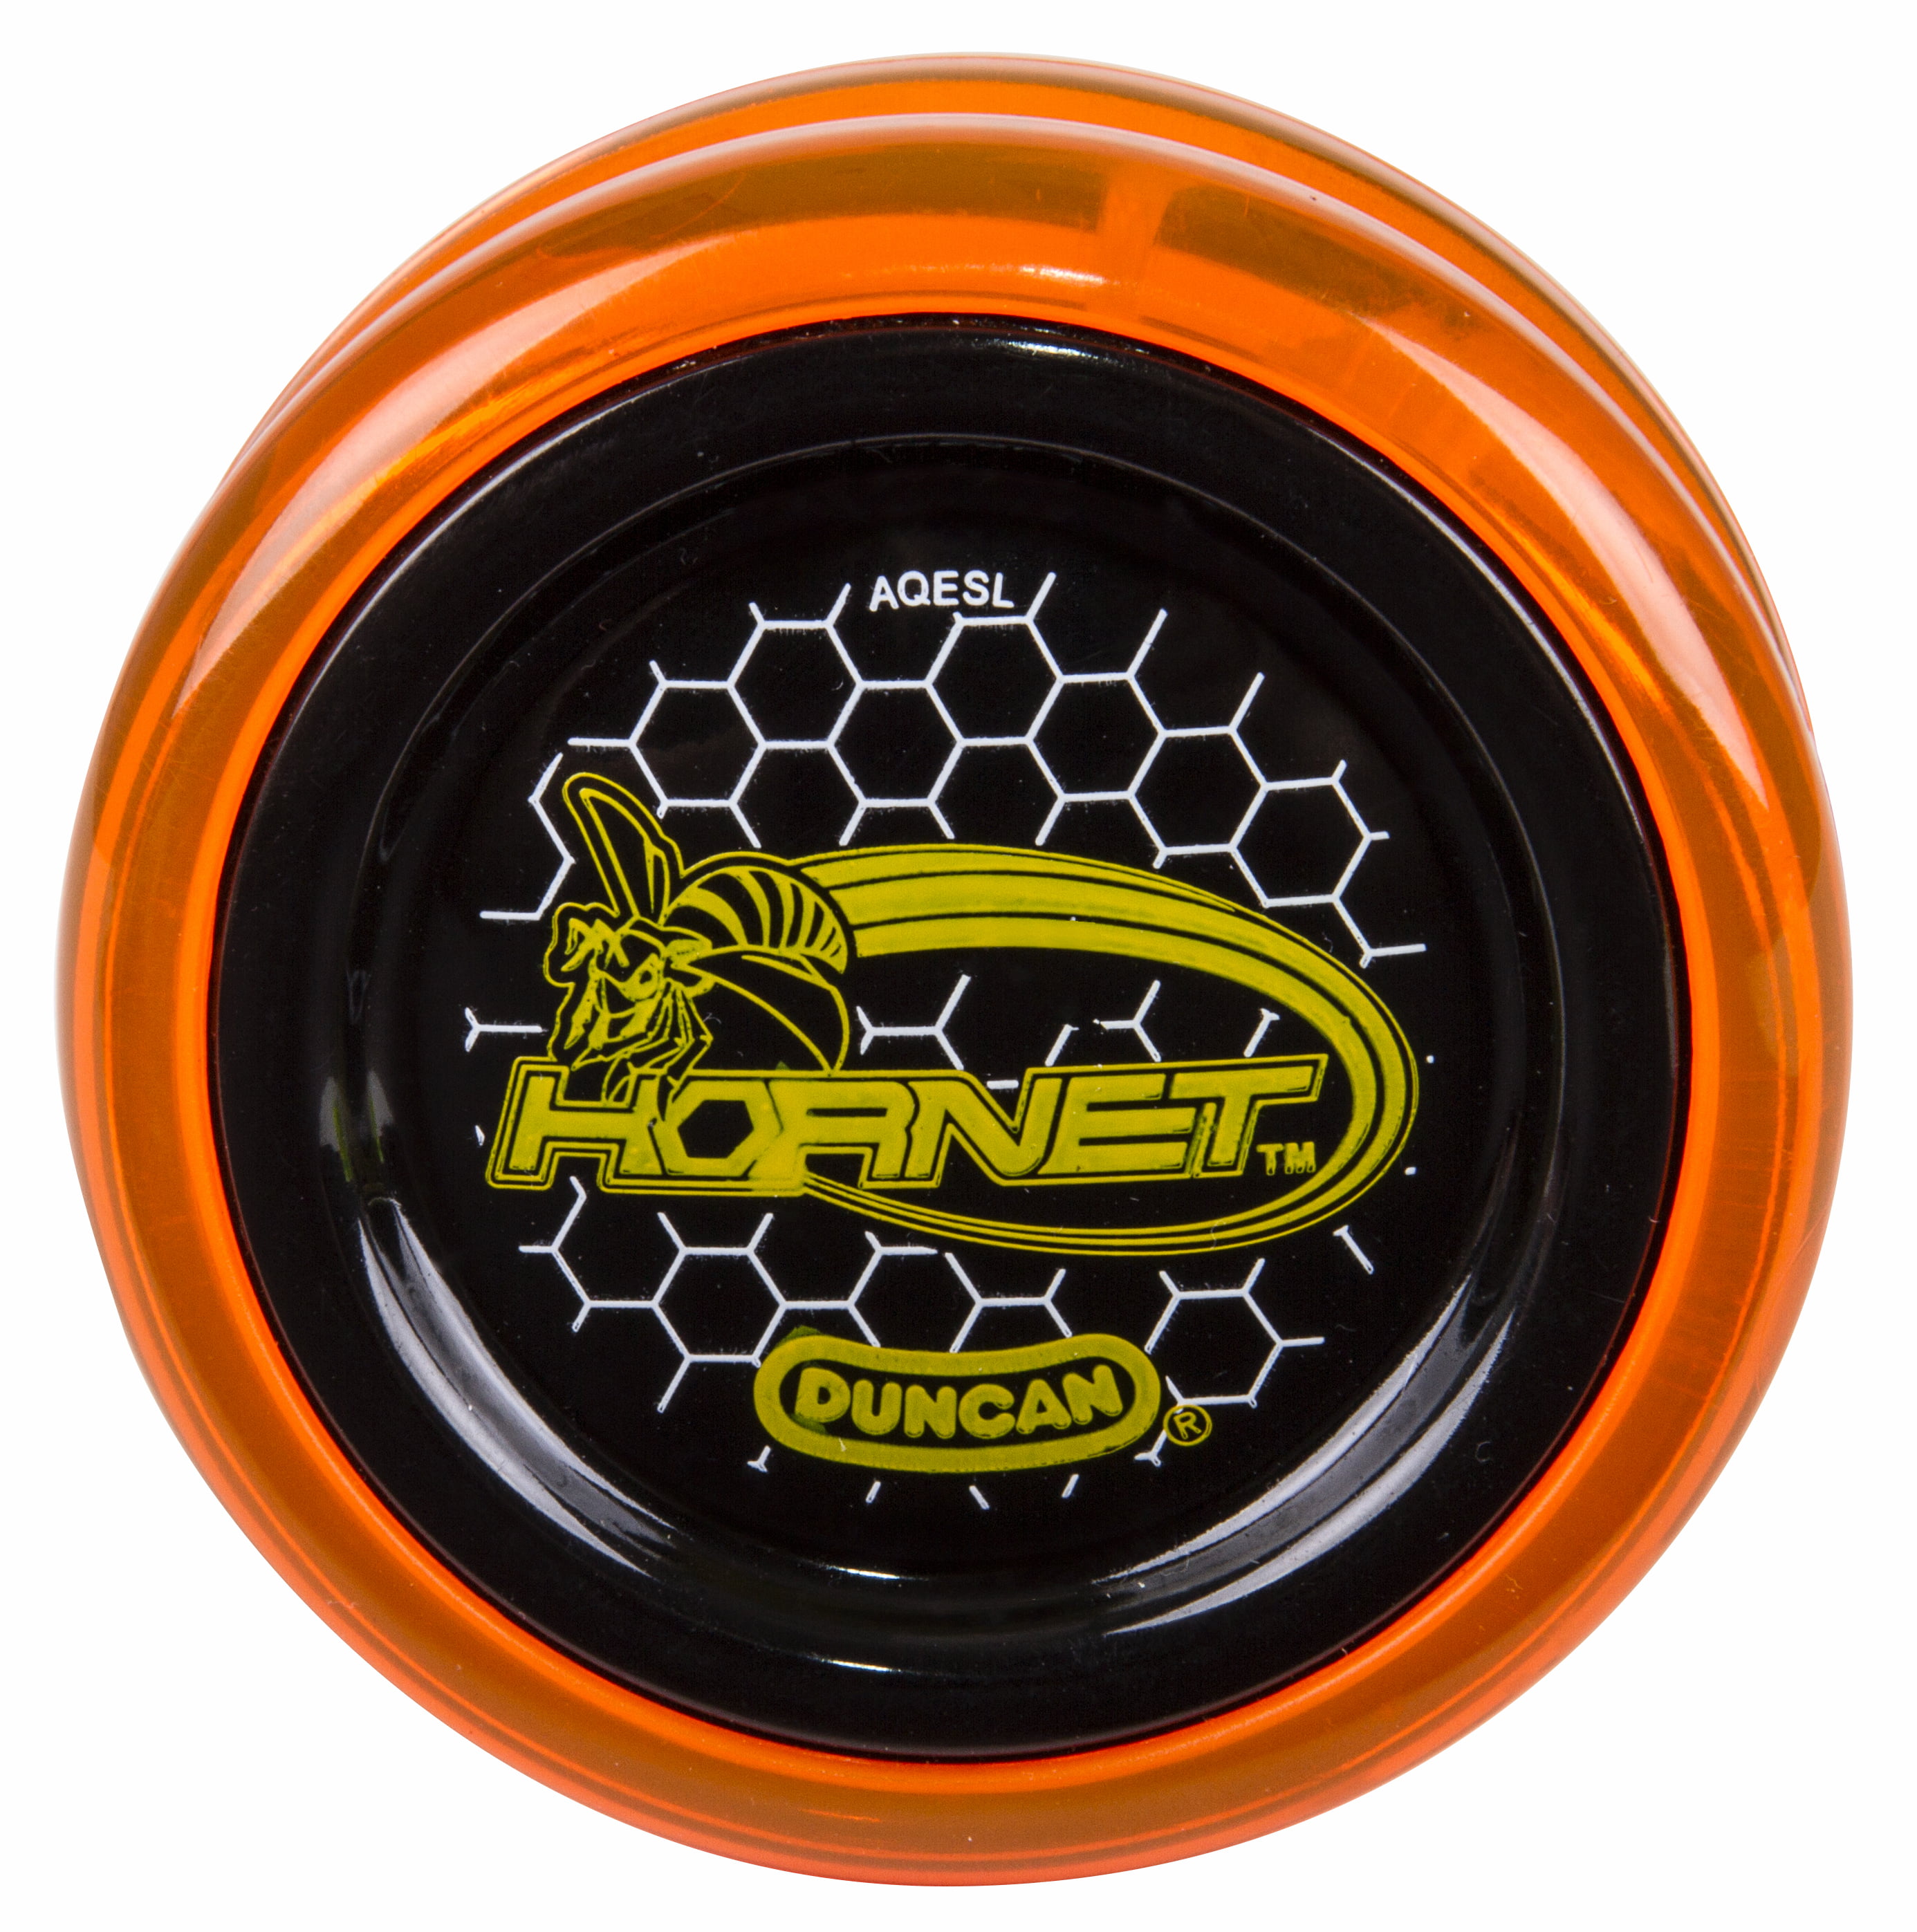 Duncan Hornet Yo-Yo Trans Orange with Black Caps 